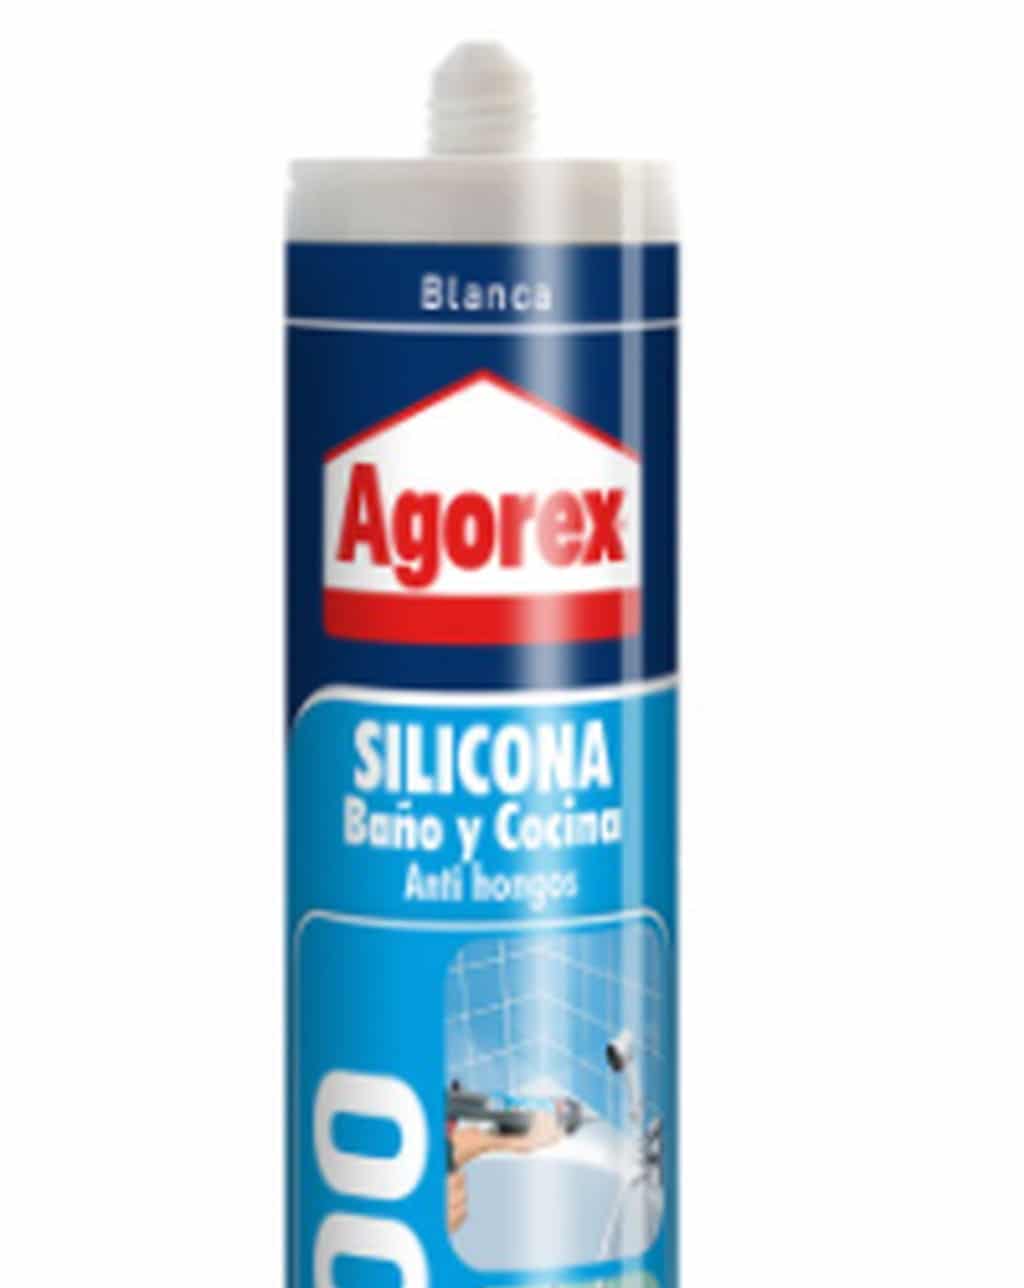 AGOREX - Adhesivo de Montaje PL500 